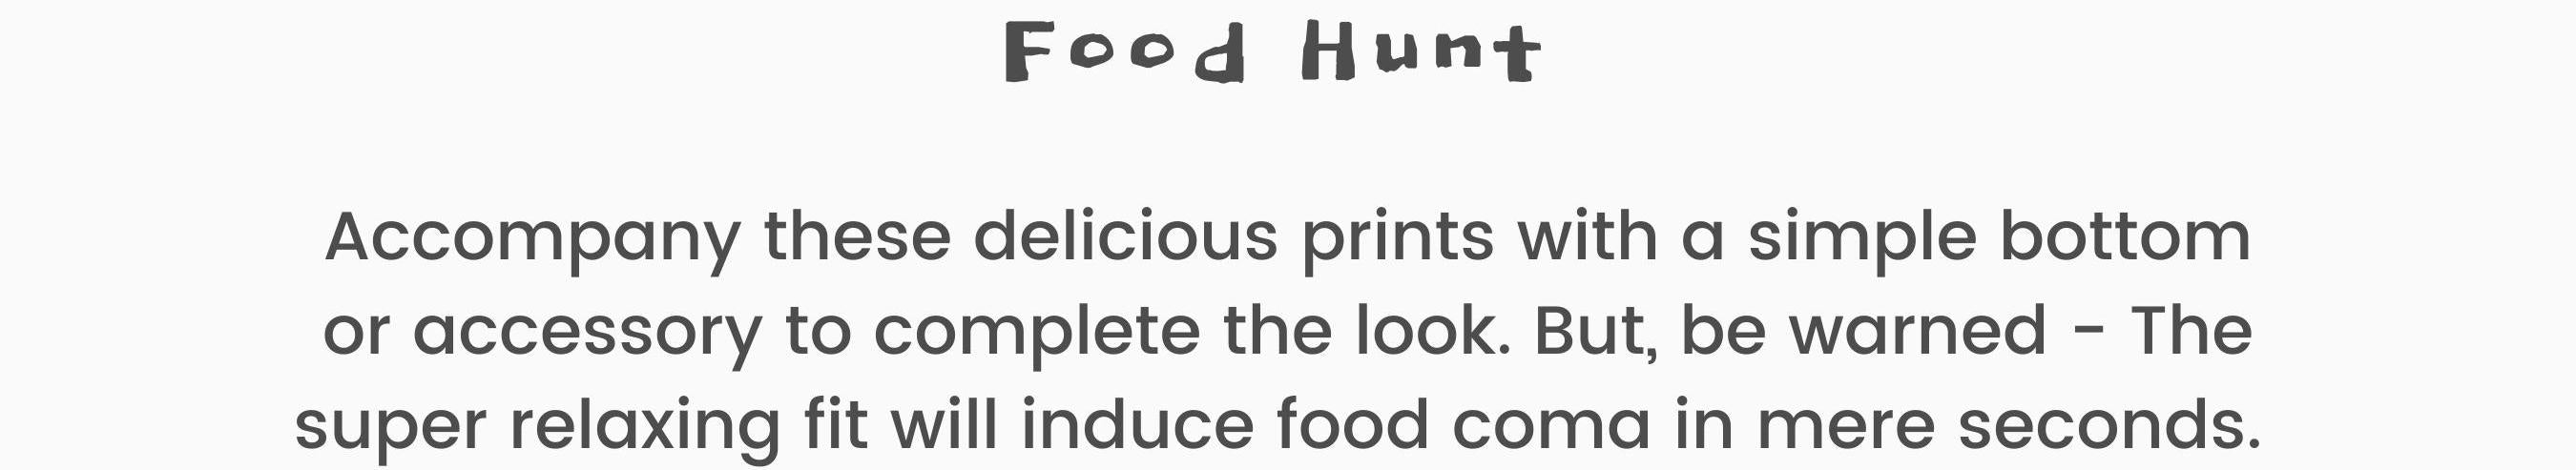 Food Hunt